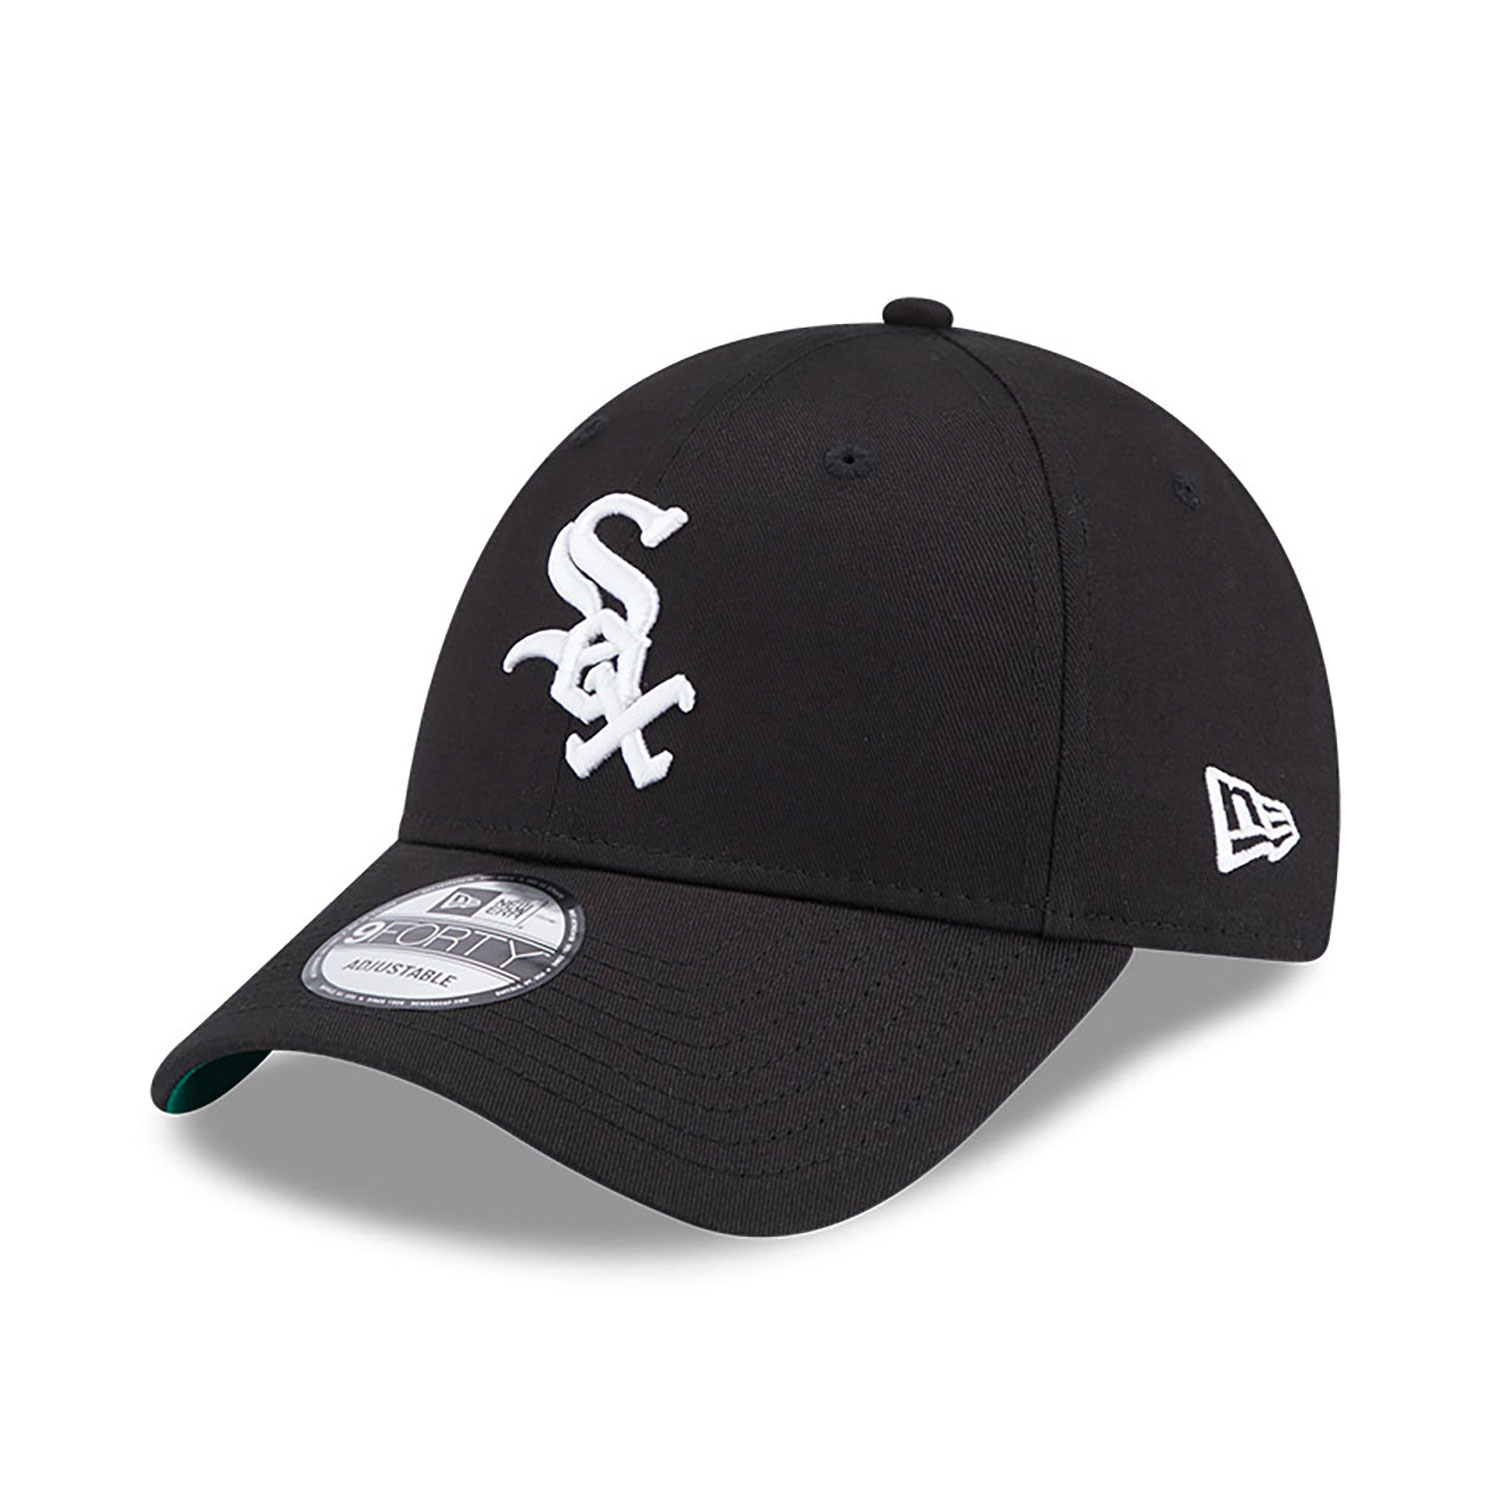 Chicago White Sox Caps, Hats & Clothing | New Era Cap UK